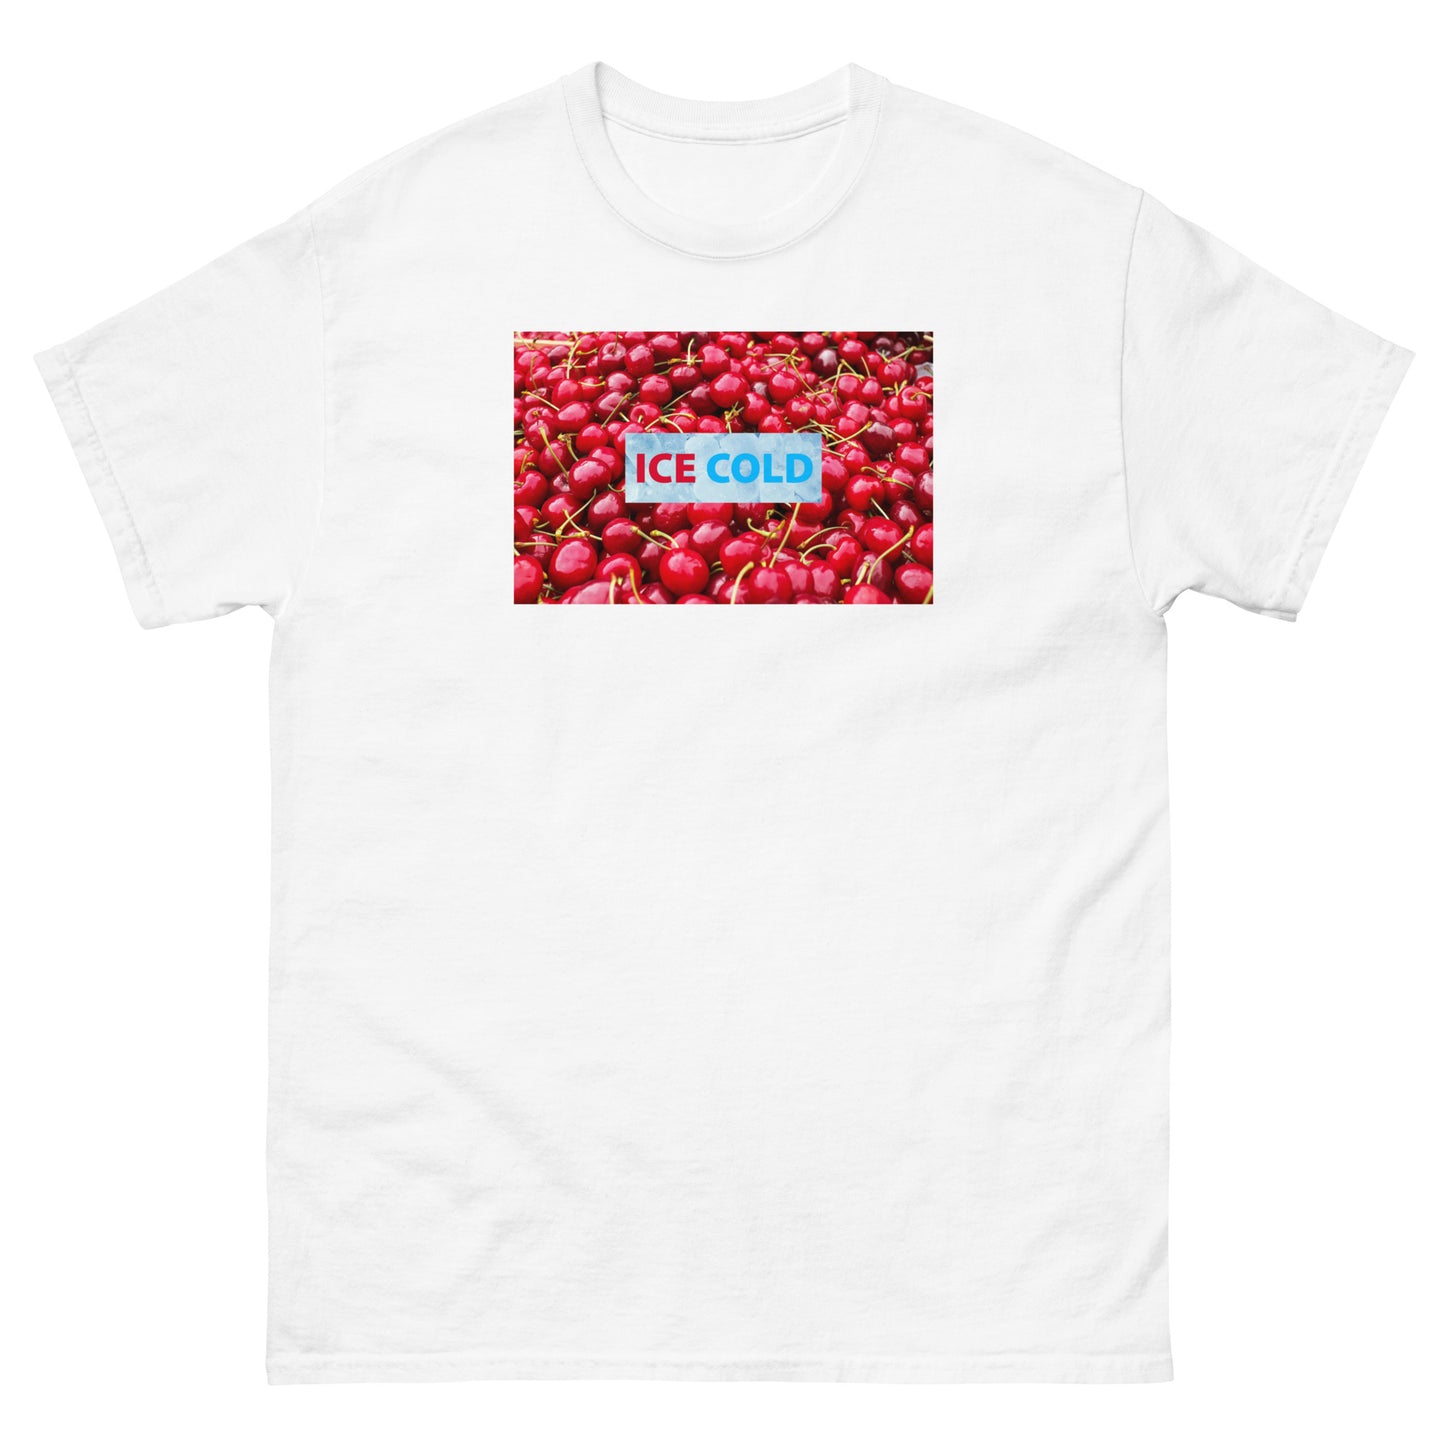 Unisex Ice Cold Cherries Shirt